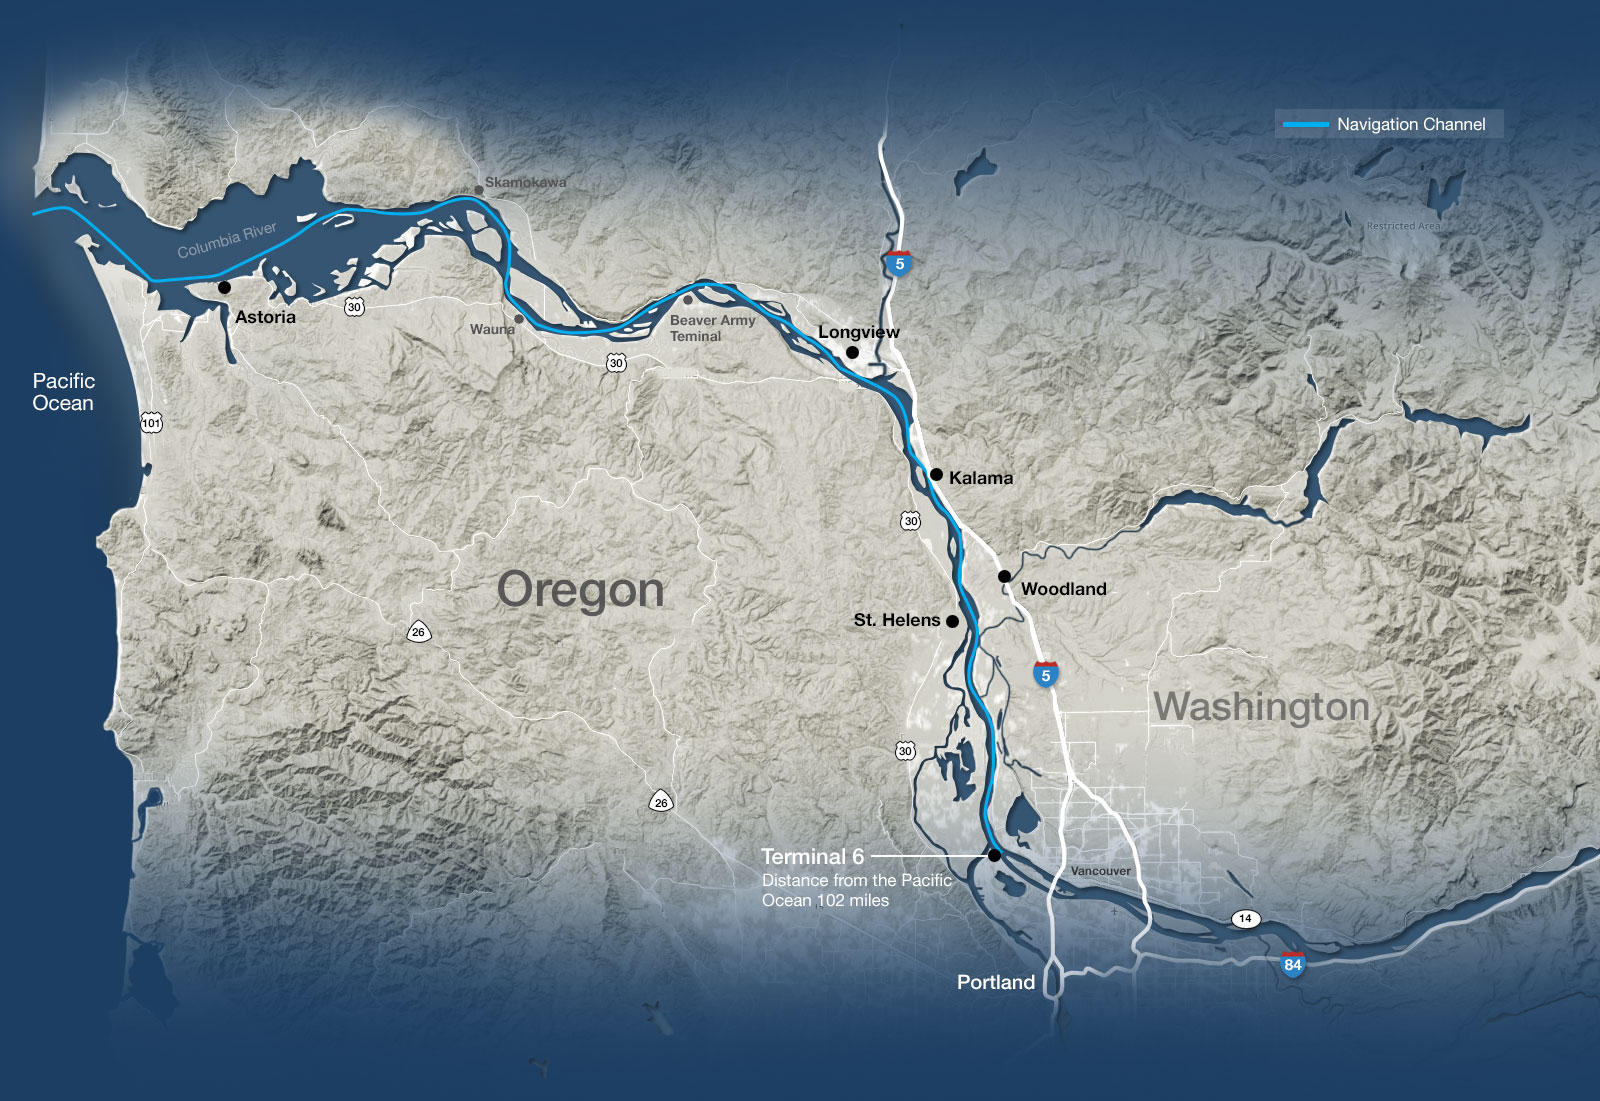 Navigation_OregonMap.jpg